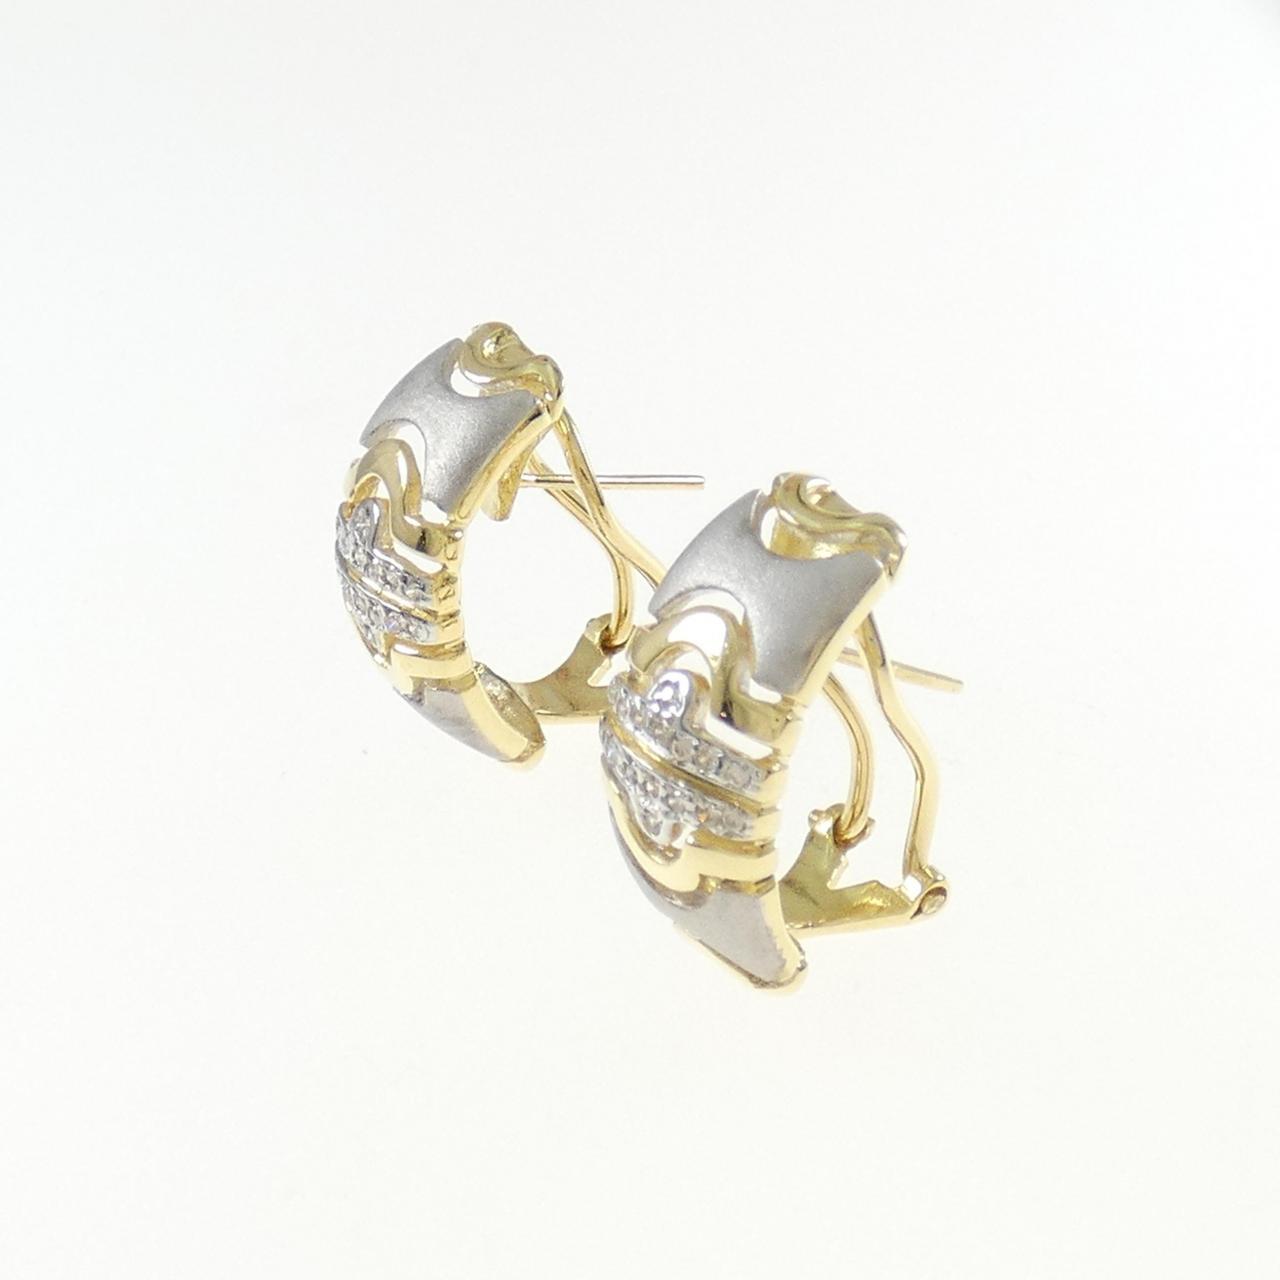 750YG/750WG Diamond earrings